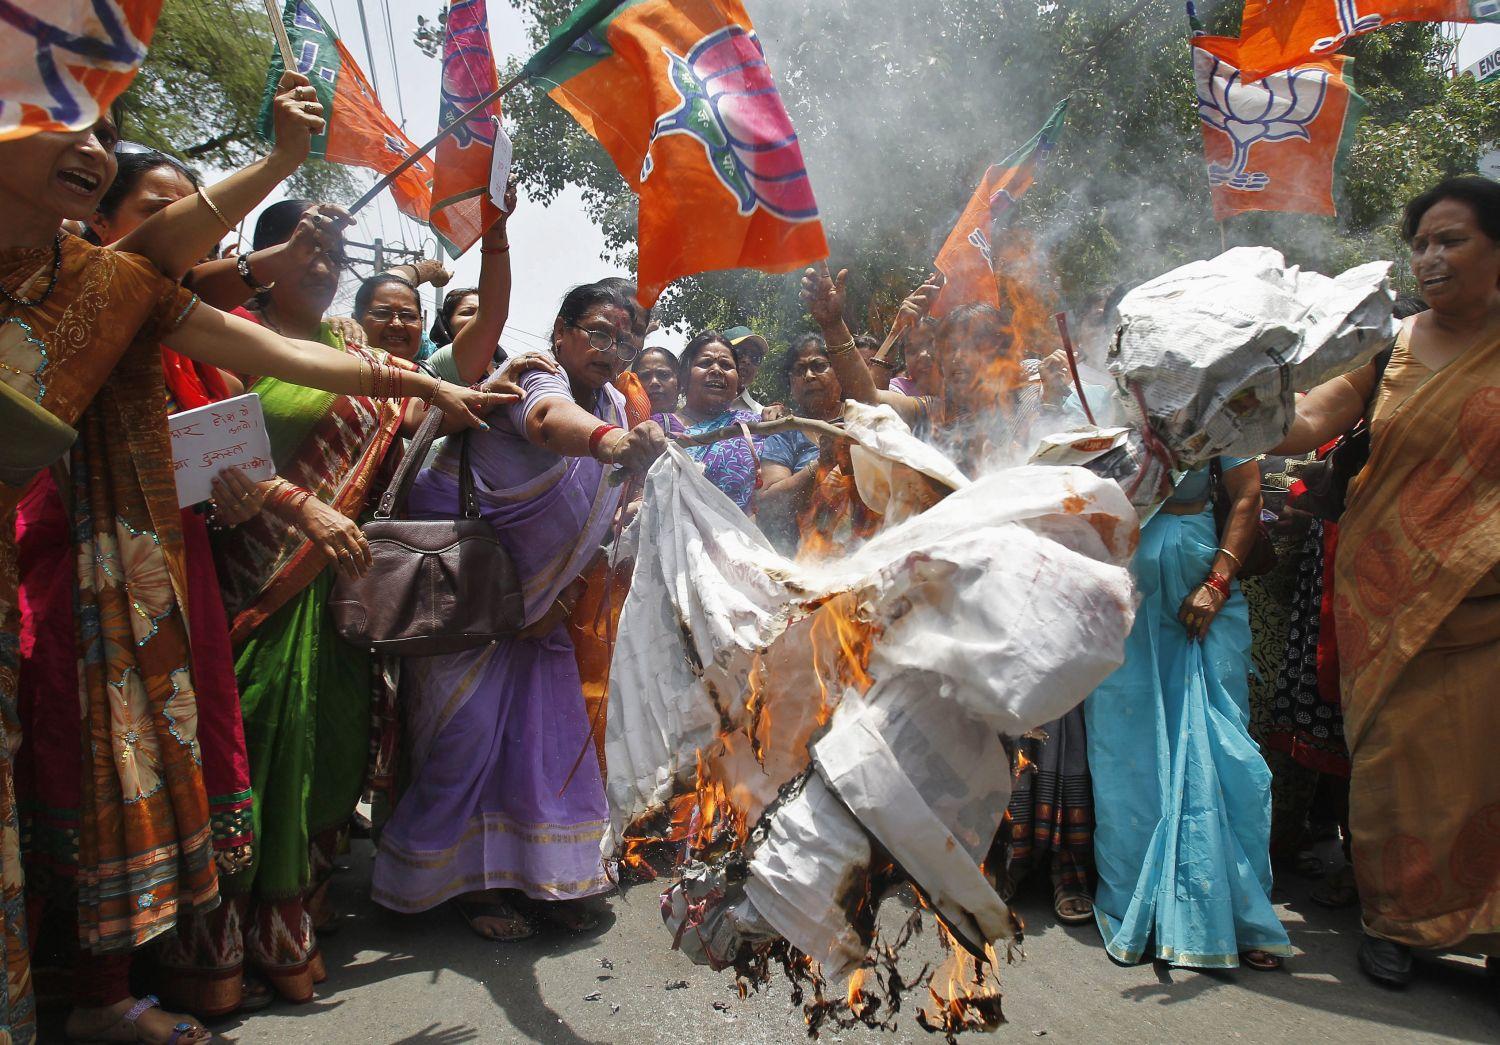 A két lány halála után több tüntetést is tartottak. Az egyiken elégettek egy Akiles Jadav Uttar Prades-i miniszterelnököt megtestesítő bábut is